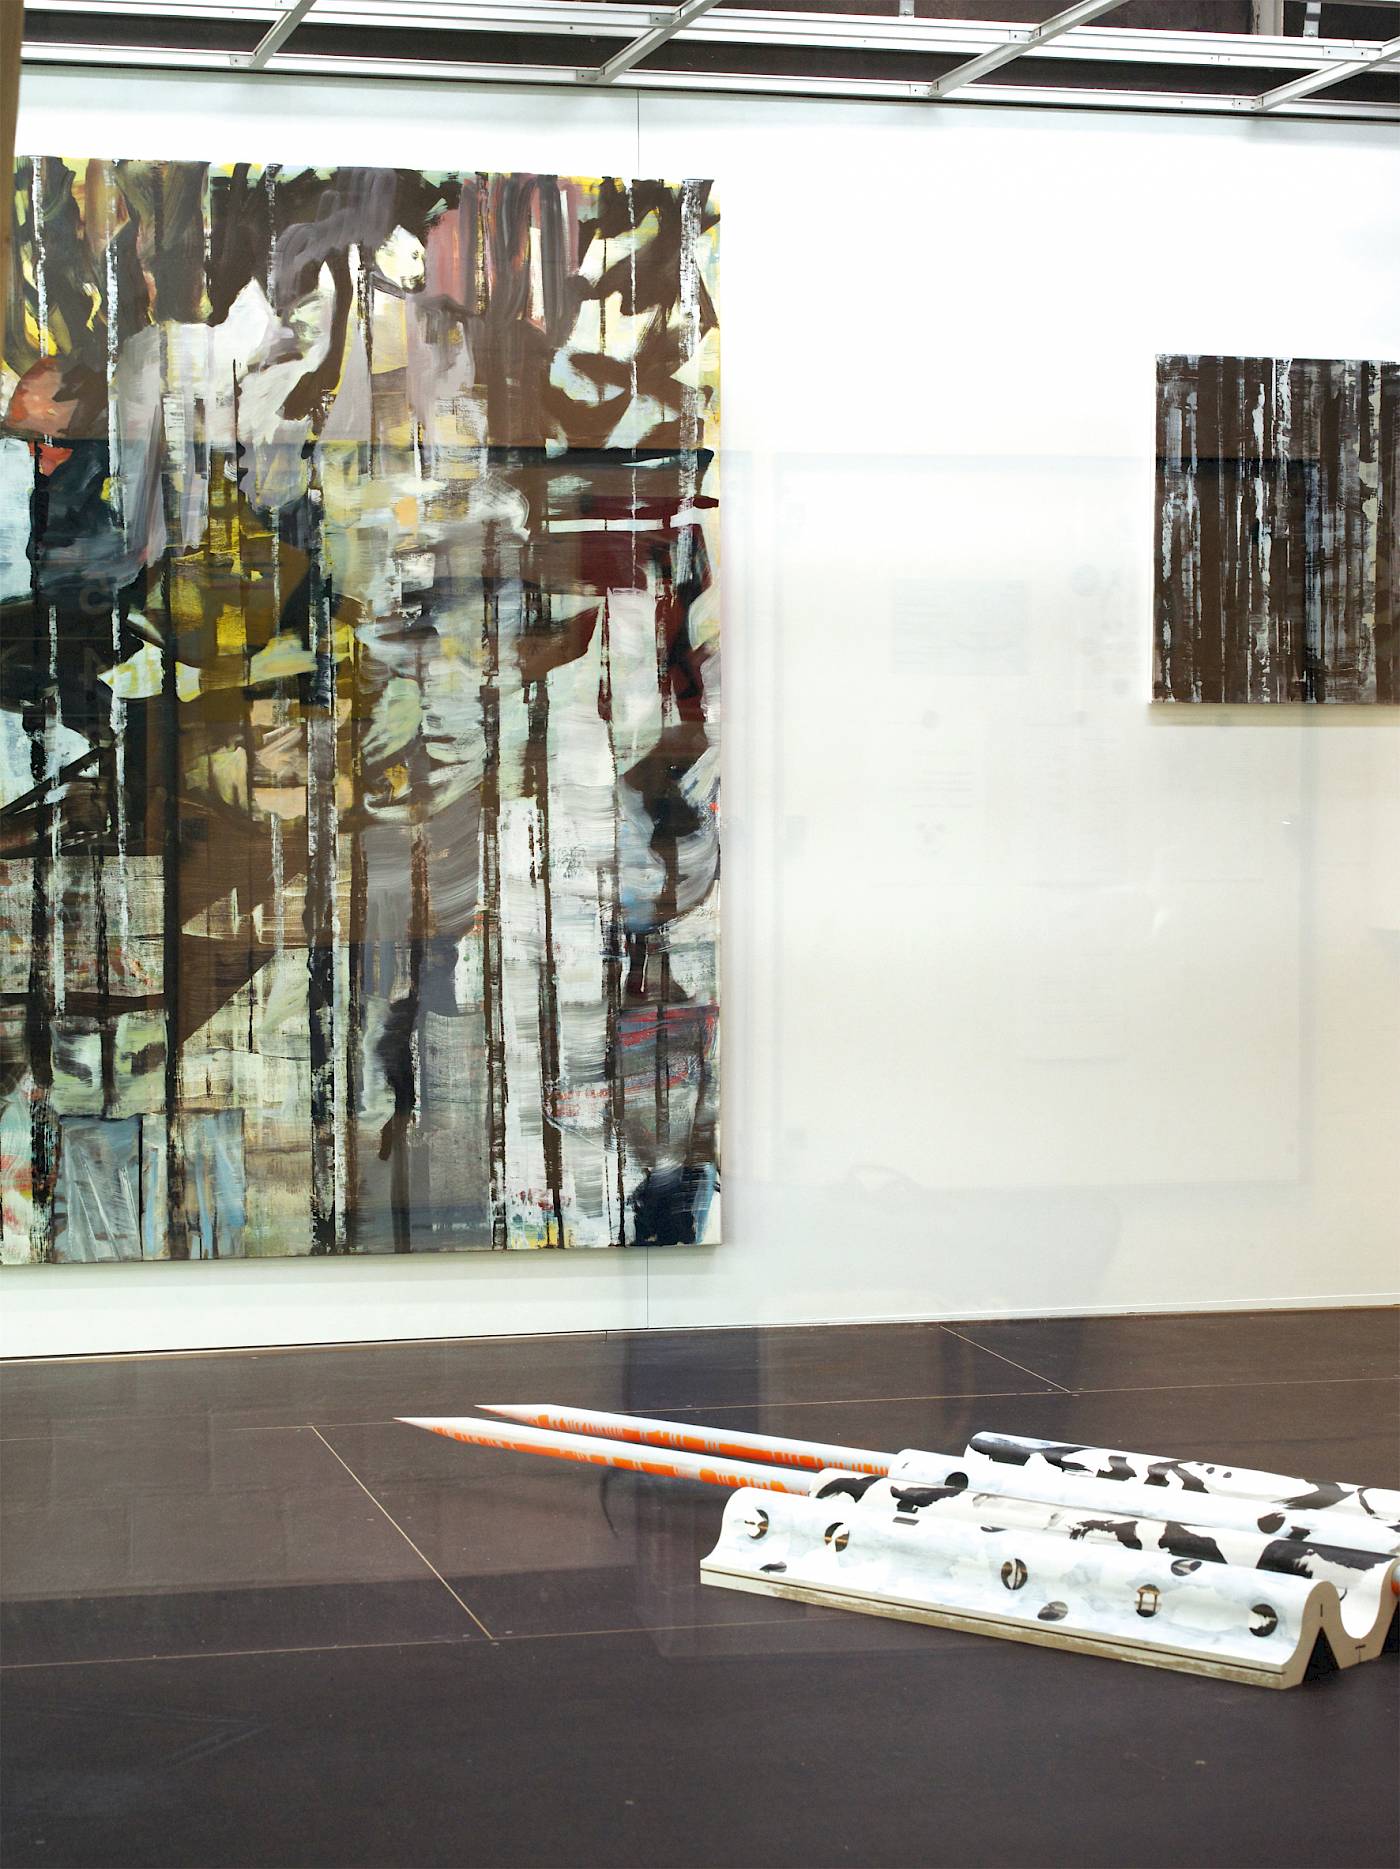 Ausstellung Kunstkabine, Kantonsschule Wiedikon 2014, Bildstäbe, Buchenrundholz, Tusche, Oelfarbe auf MDF, 249 x 70 x 10 cm